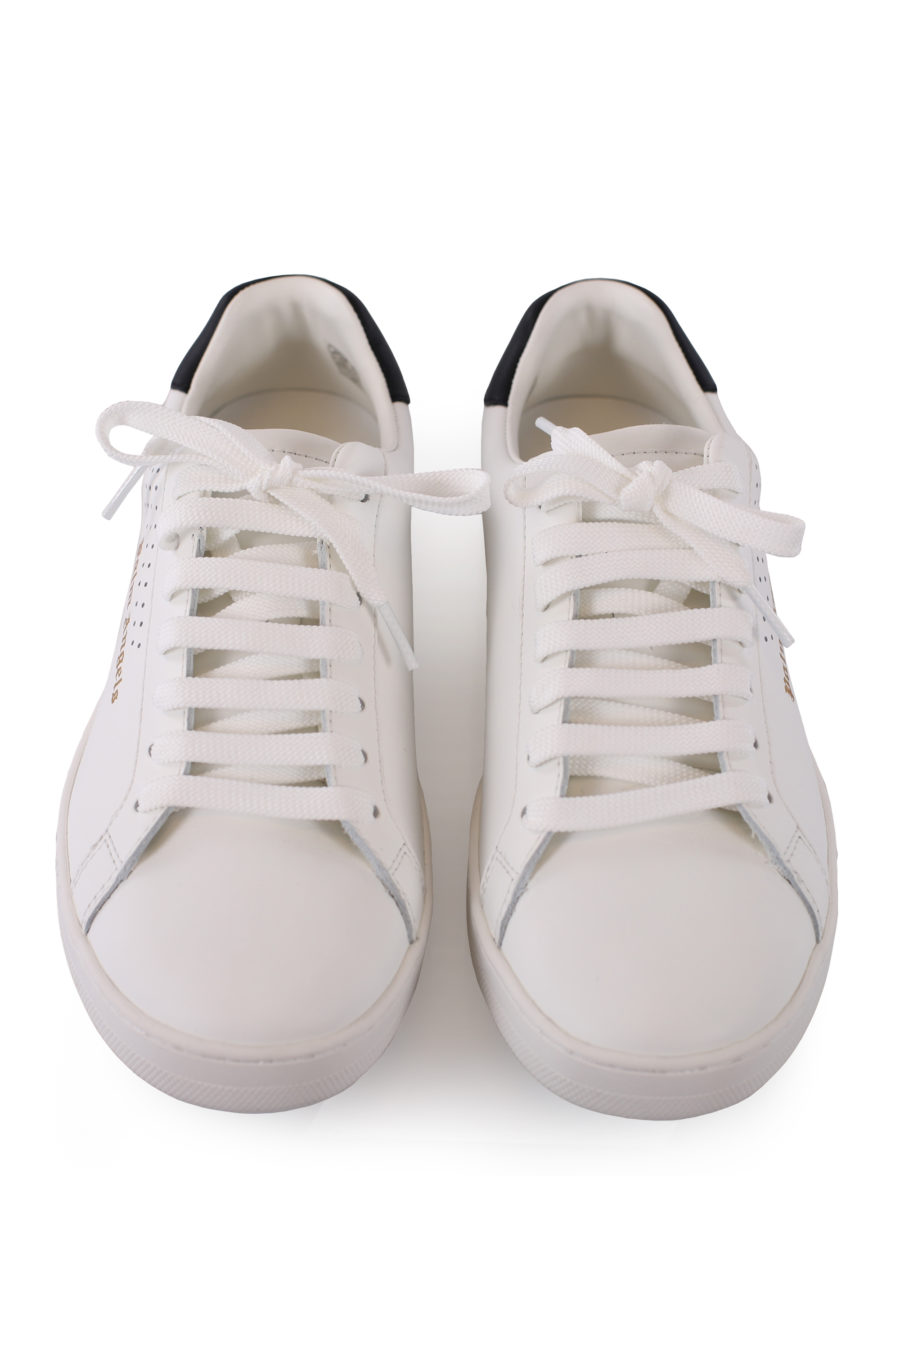 Zapatillas blancas con logo dorado - IMG 9009